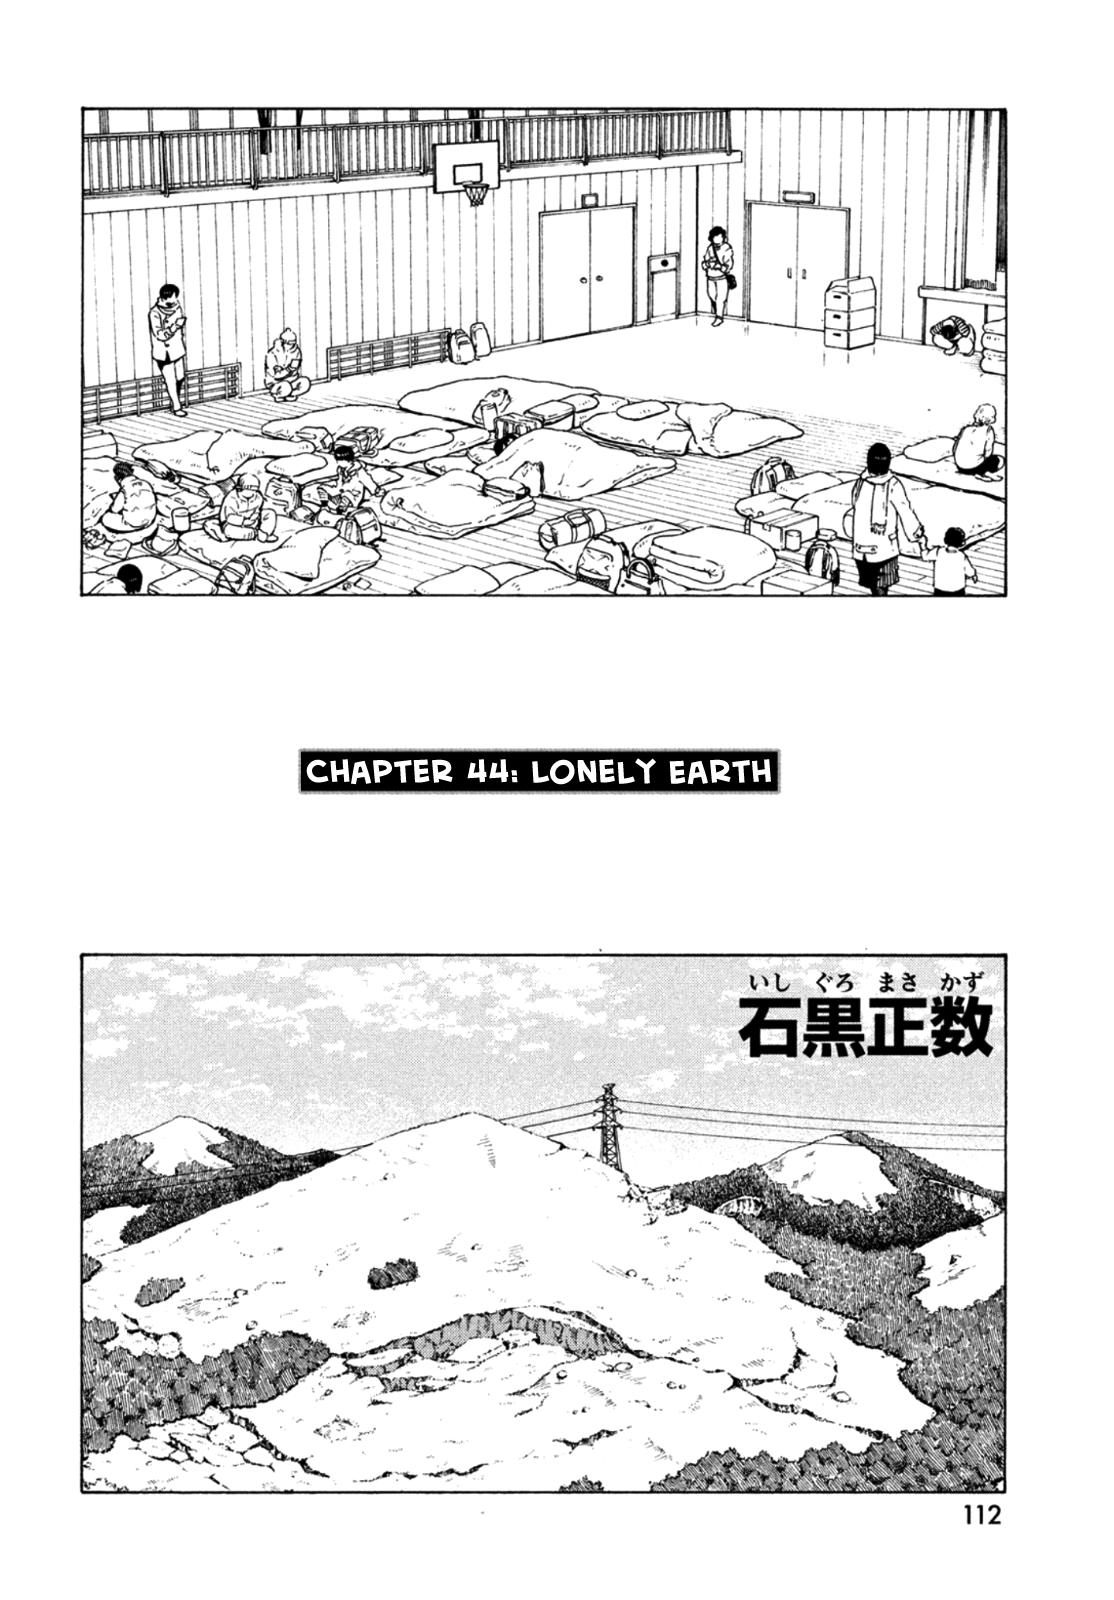 Tengoku Daimakyou Vol.8 Chapter 44: Lonely Earth ➀ page 3 - Mangakakalot